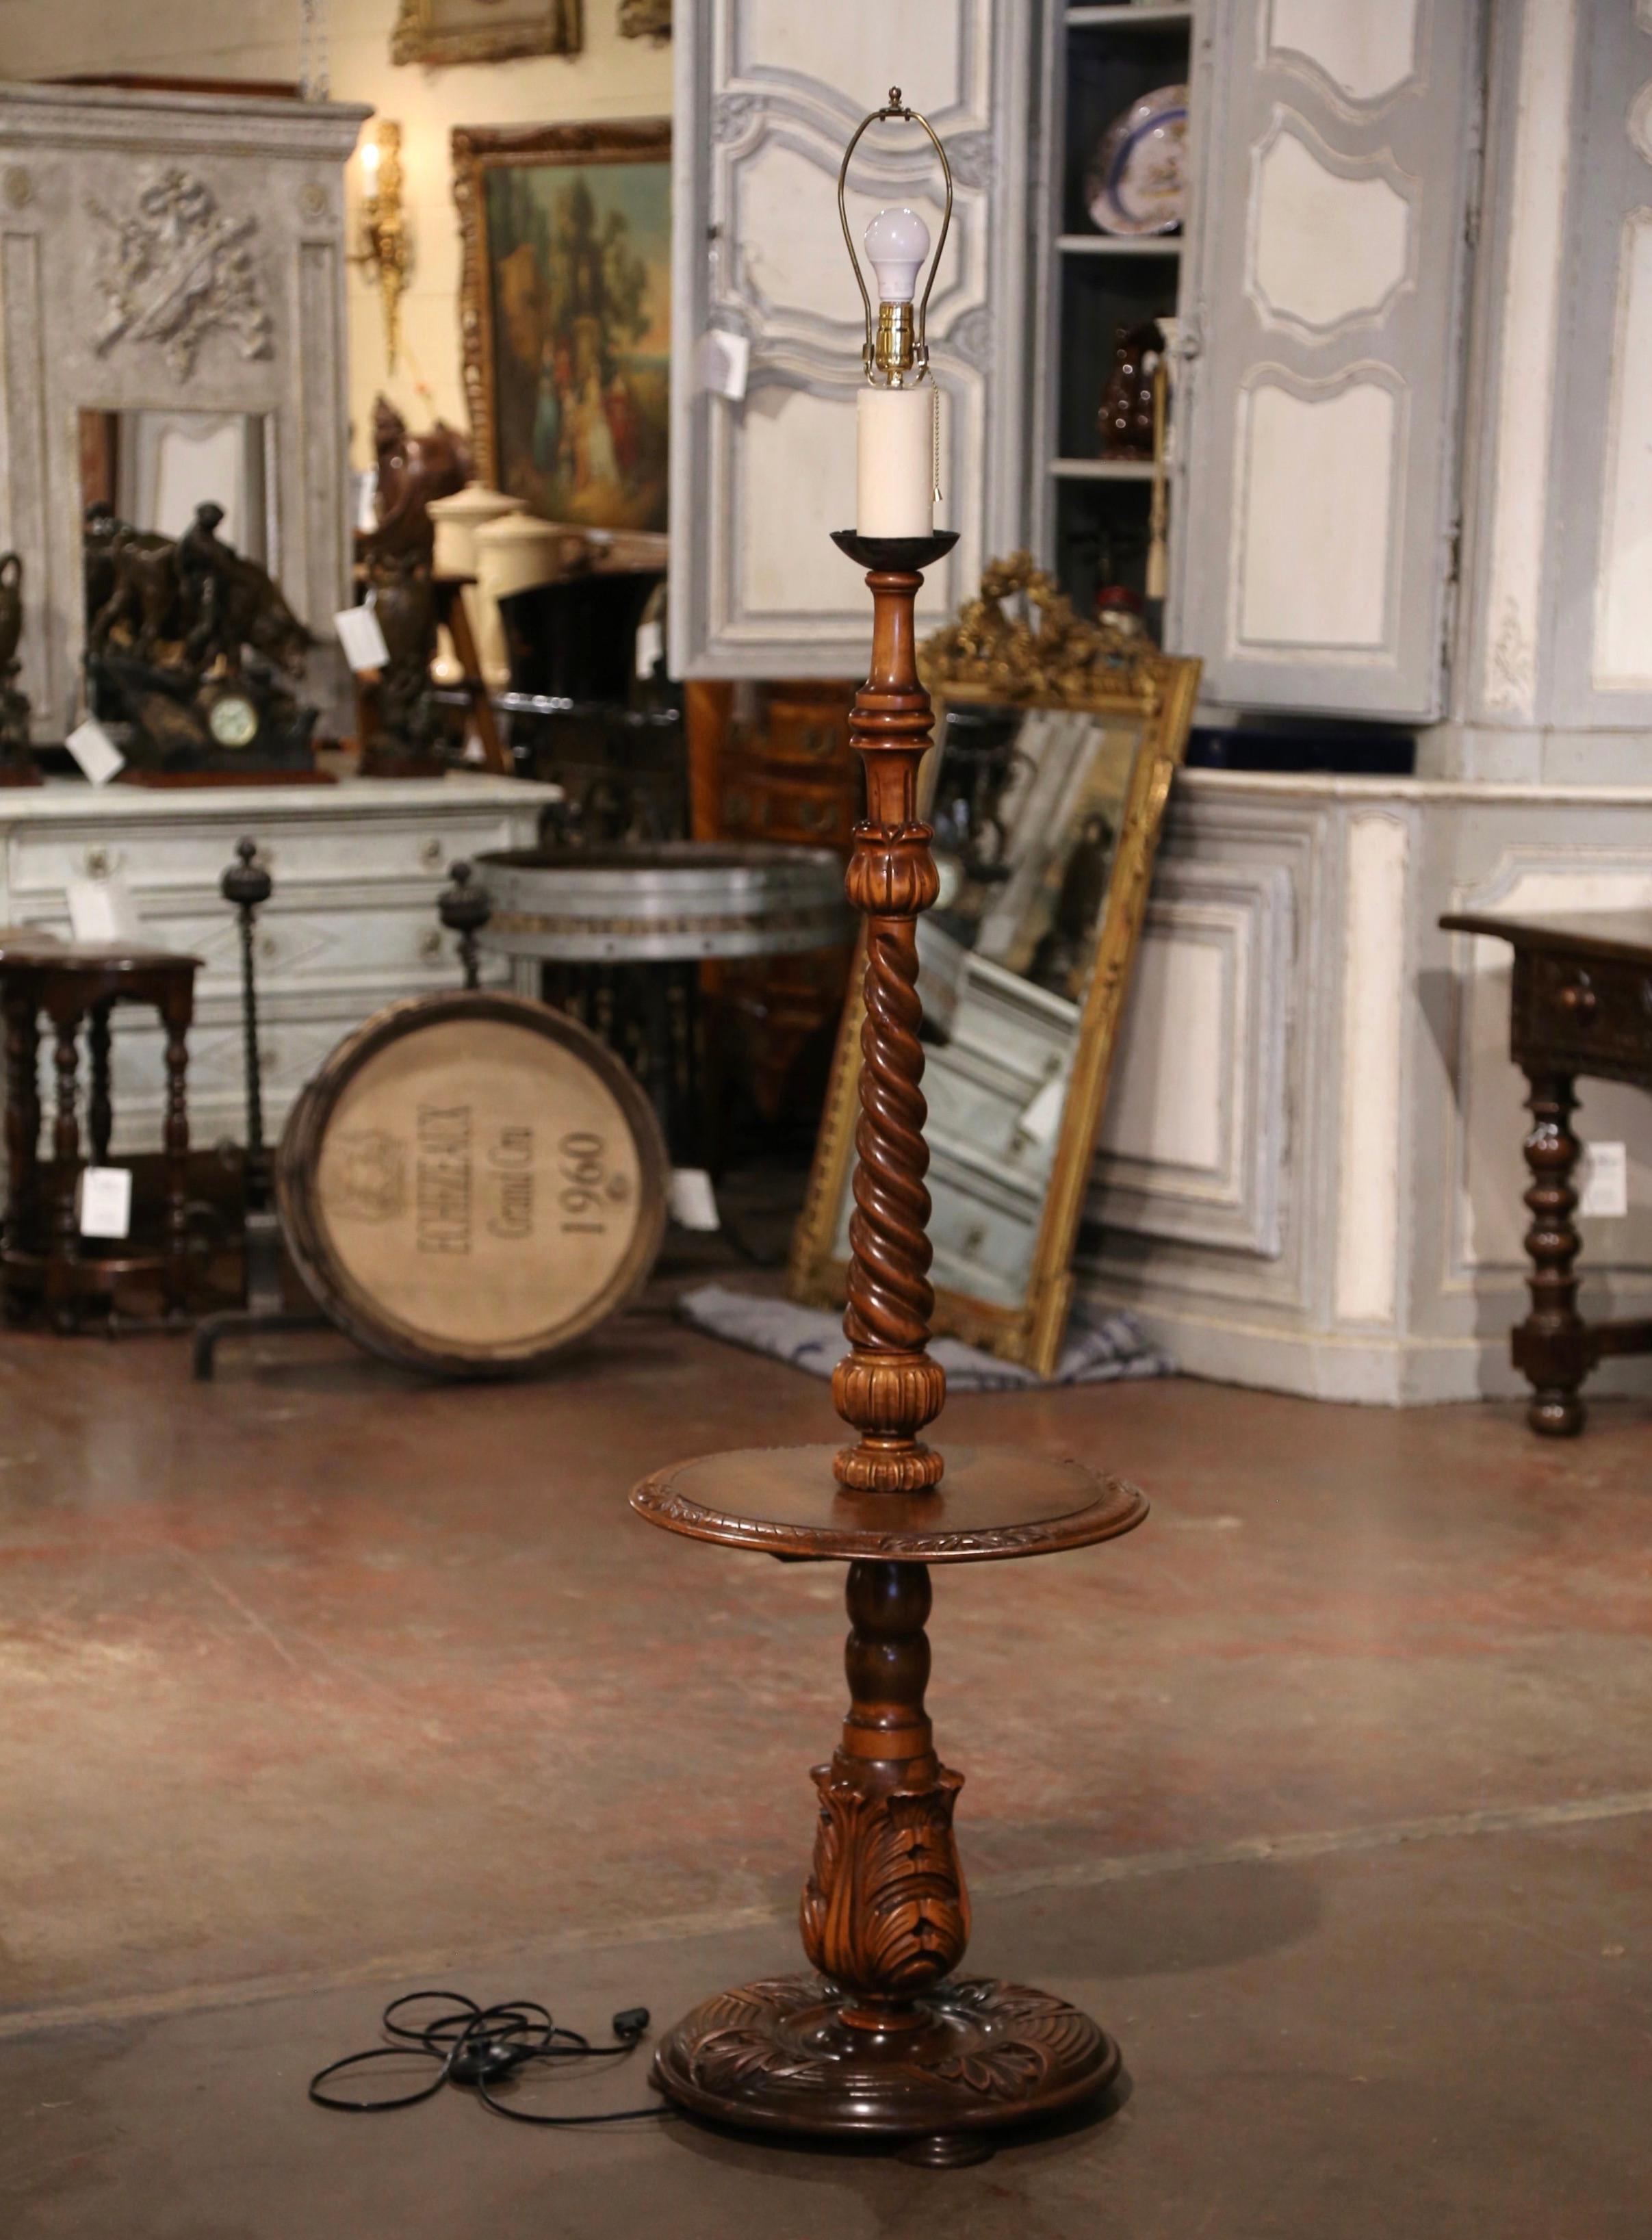 Diese einzigartige, antike Stehlampe wurde um 1920 in Nordfrankreich hergestellt. Die Lampe steht auf drei runden Füßen, die mit handgeschnitztem Laubdekor und Akanthusblättern verziert sind. Der Stiel der Lampe besteht aus einem Gerstenkorn, das in